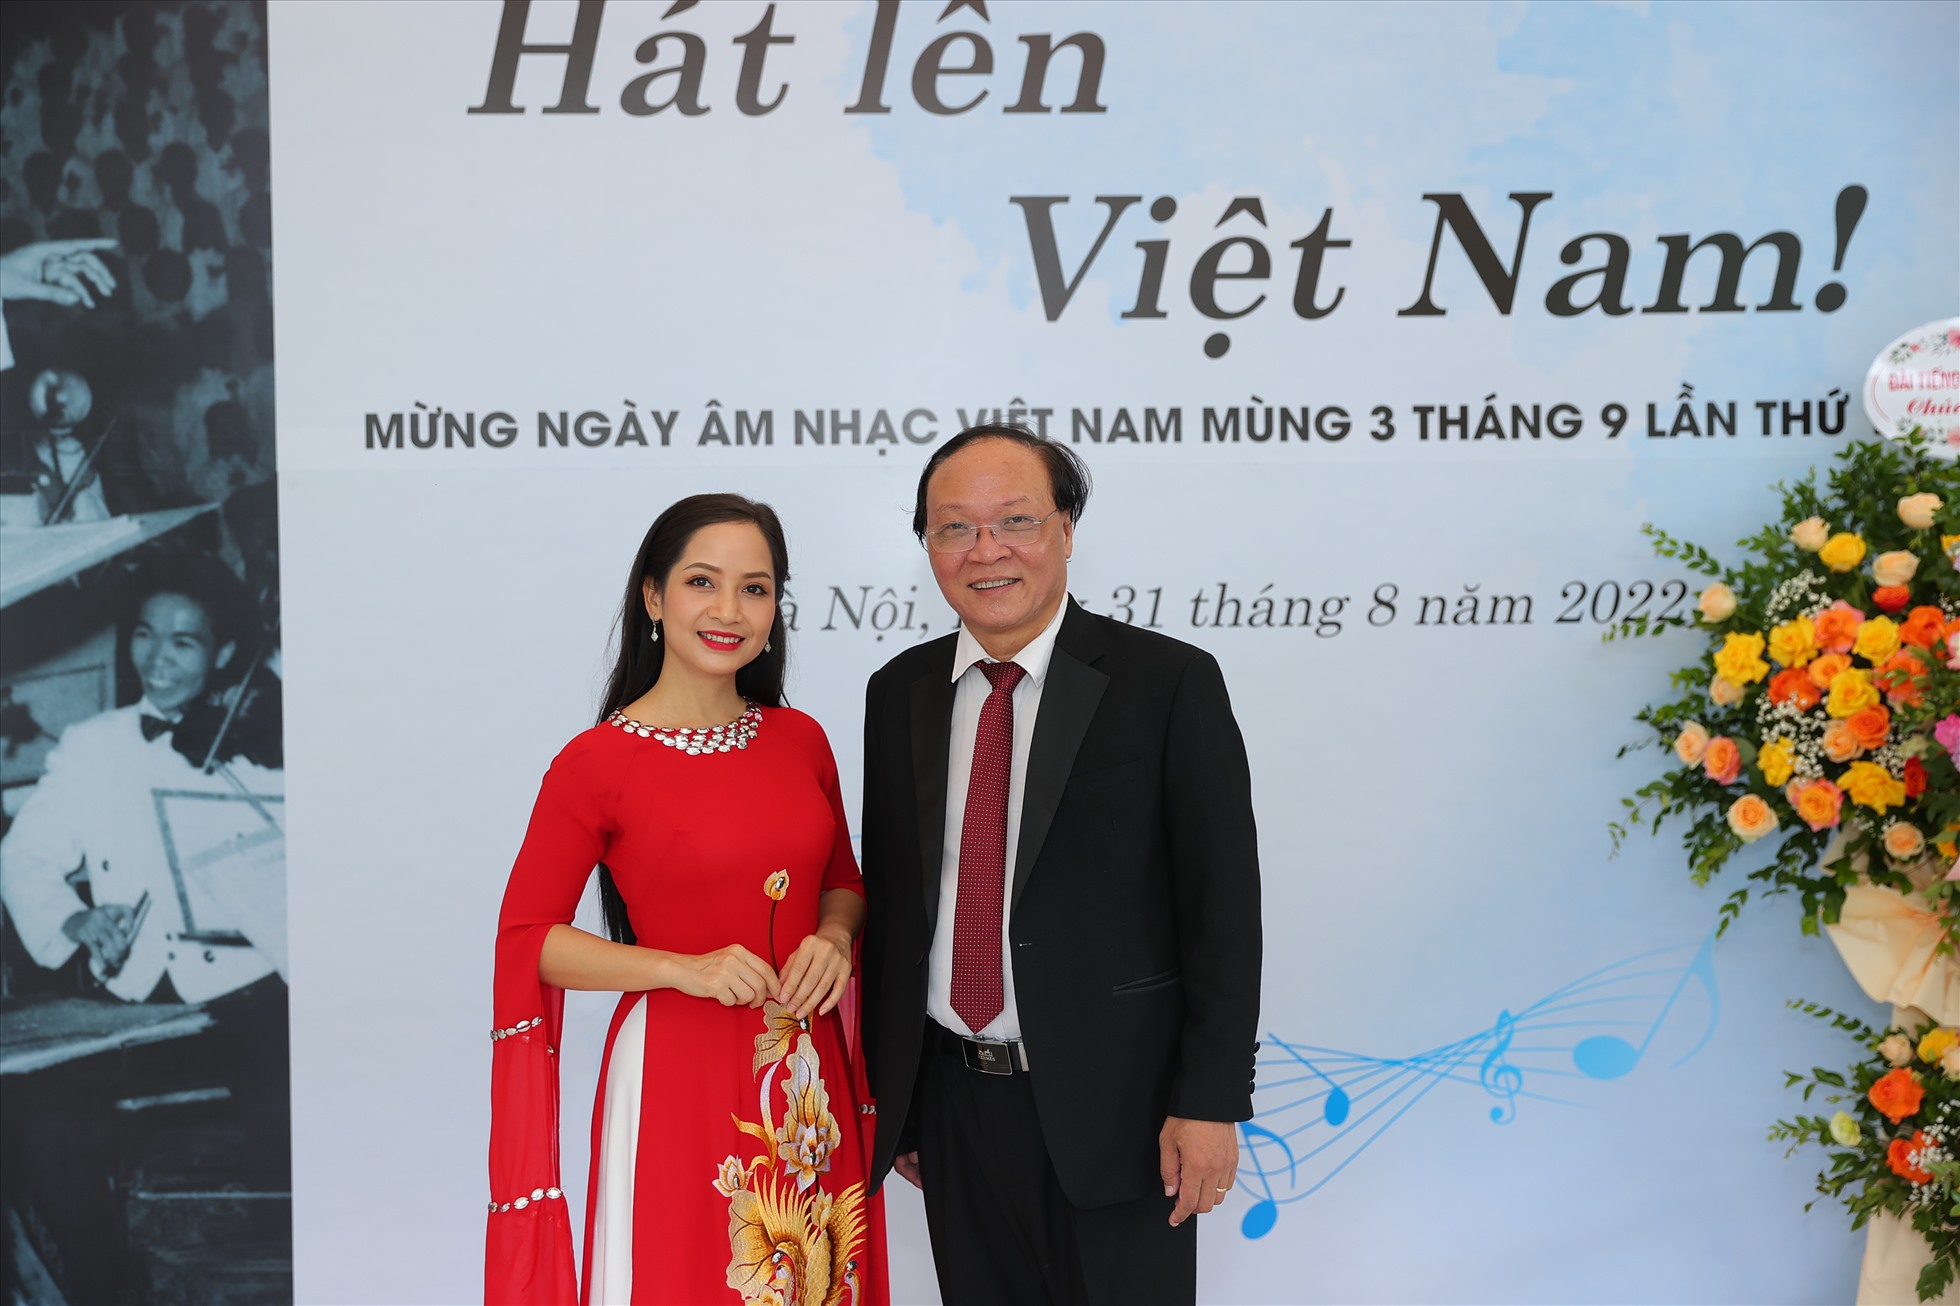 Nghệ sĩ Vũ Diệu Thảo tham gia chương trình “Hát lên Việt Nam“. Ảnh: Hòa Nguyễn